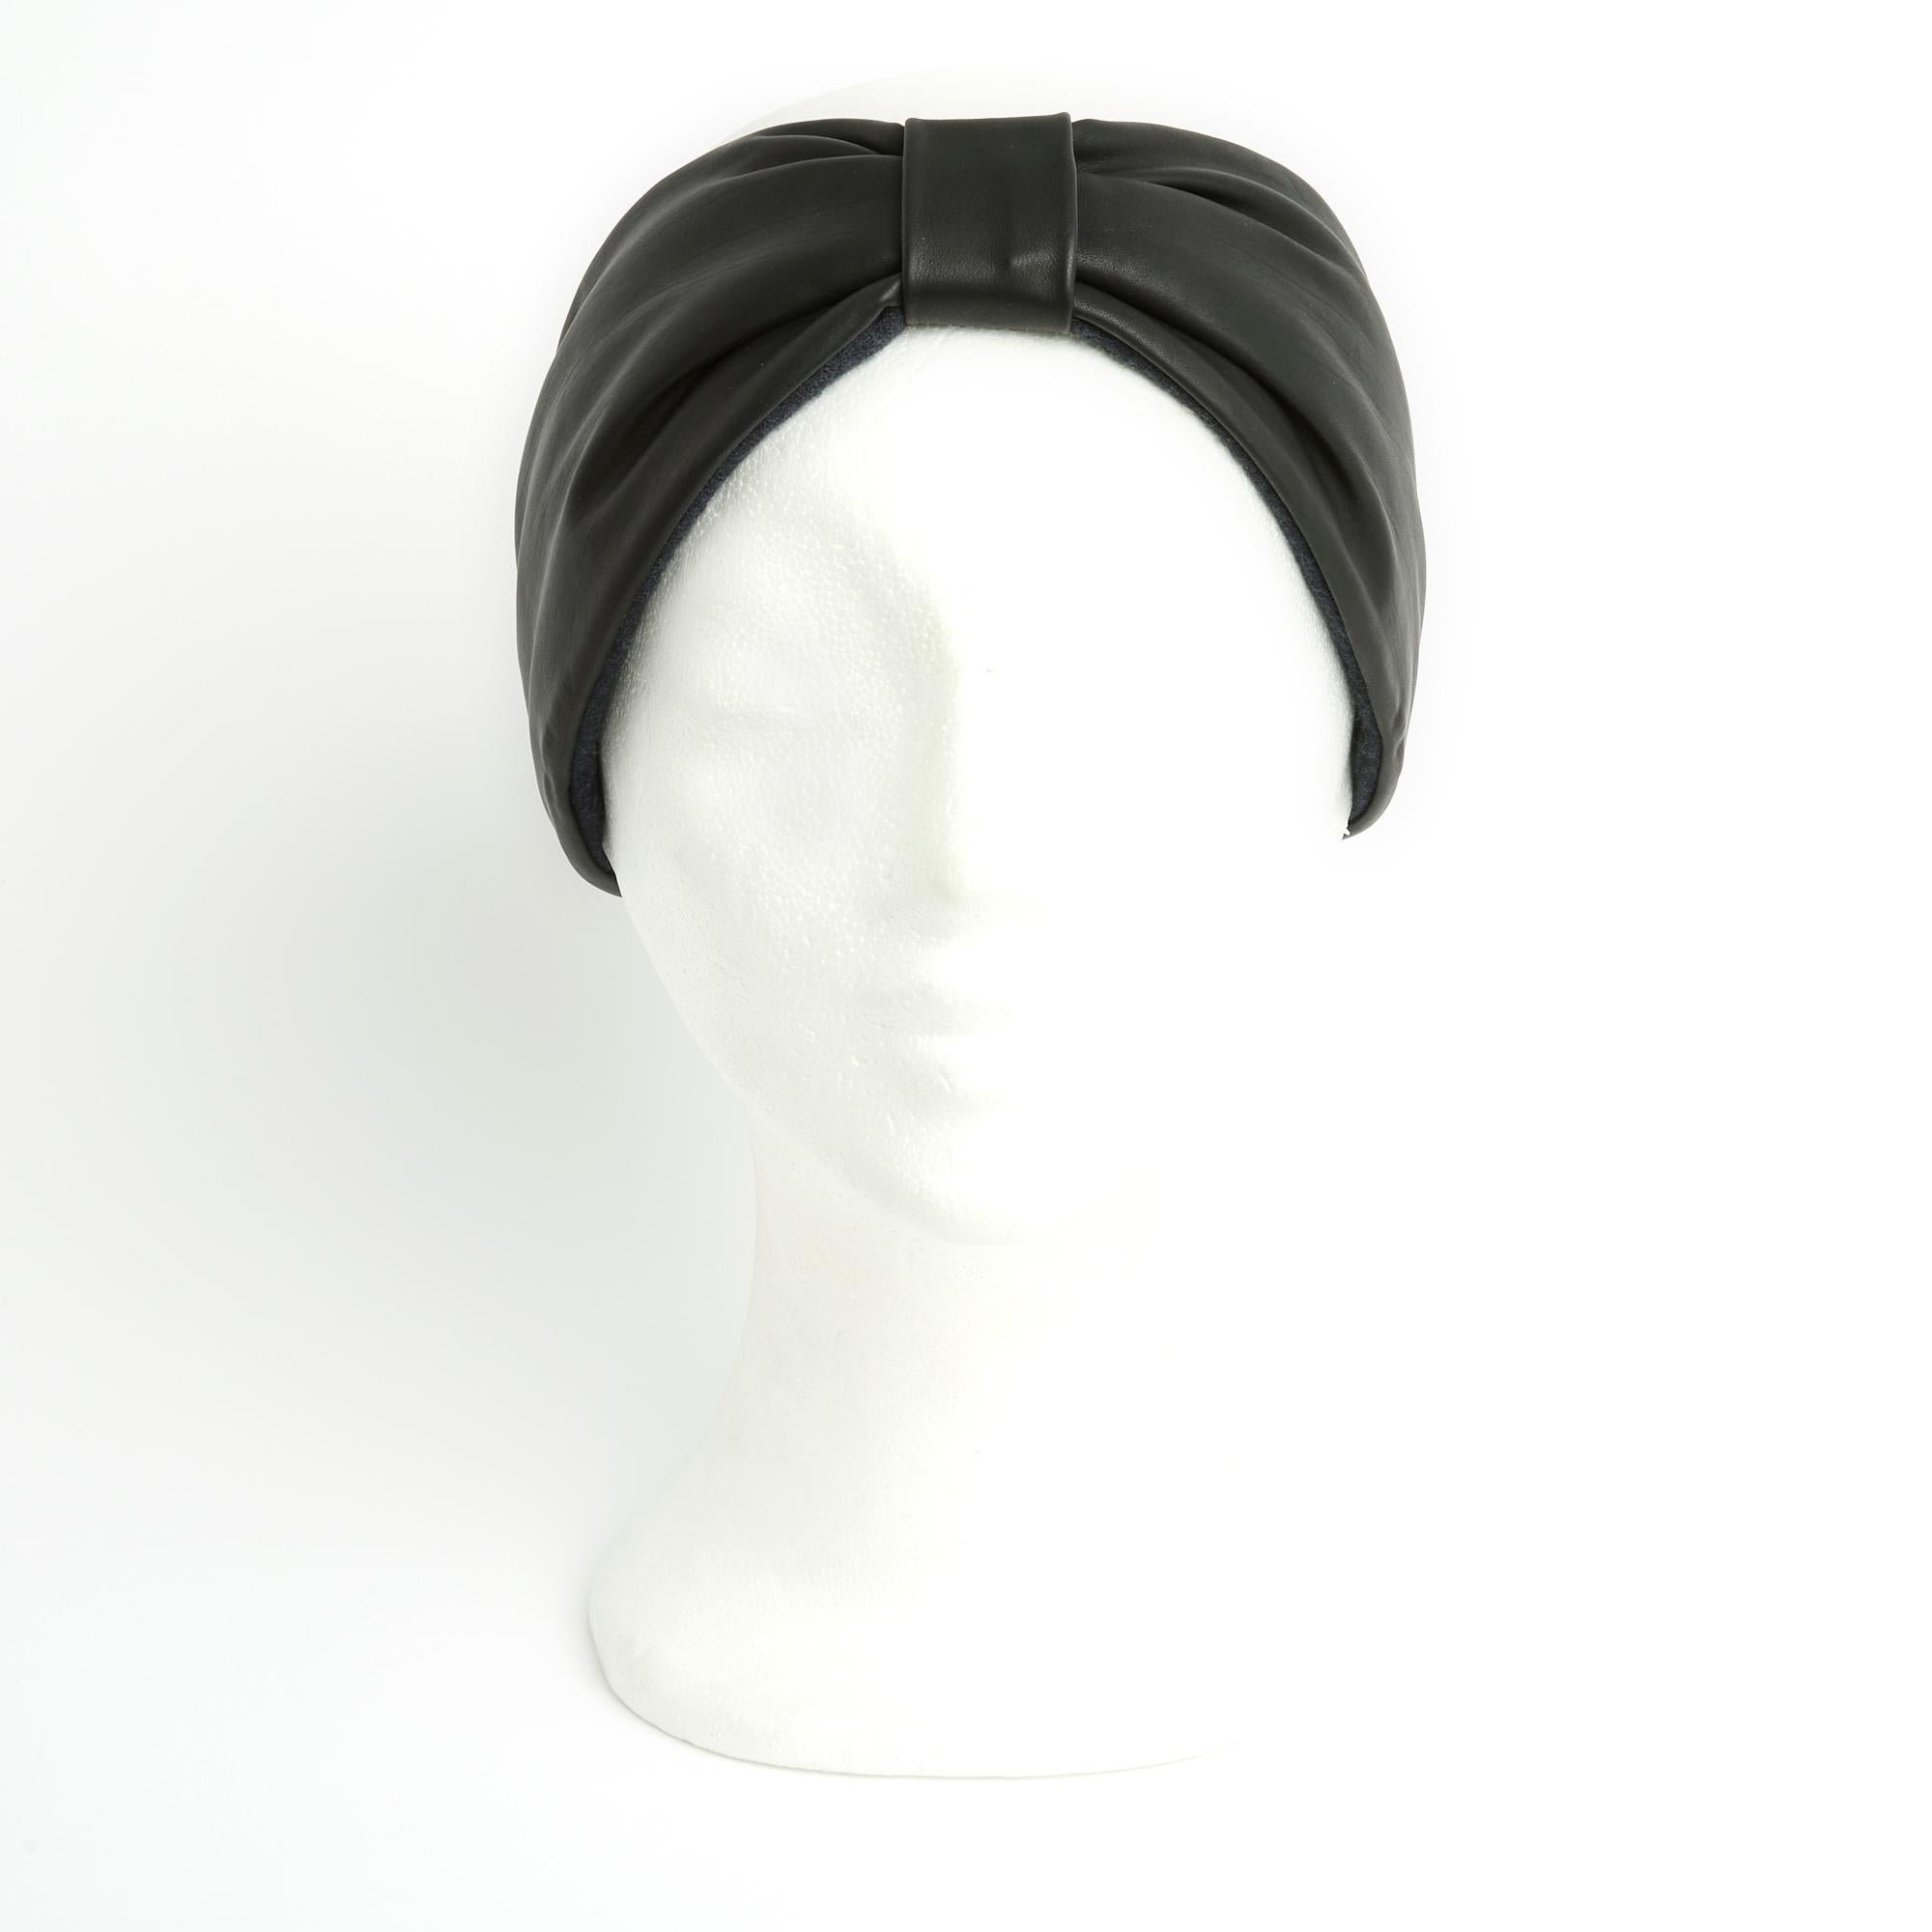 Hermès Ohrenschützer-Stirnband aus weichem schiefergrauem (fast schwarzem) Leder mit elastischem Band (mit Leder überzogen) auf der Rückseite, passendes Kaschmirfutter. Größe M. Das Stirnband erscheint neu, Vintage, geliefert in der